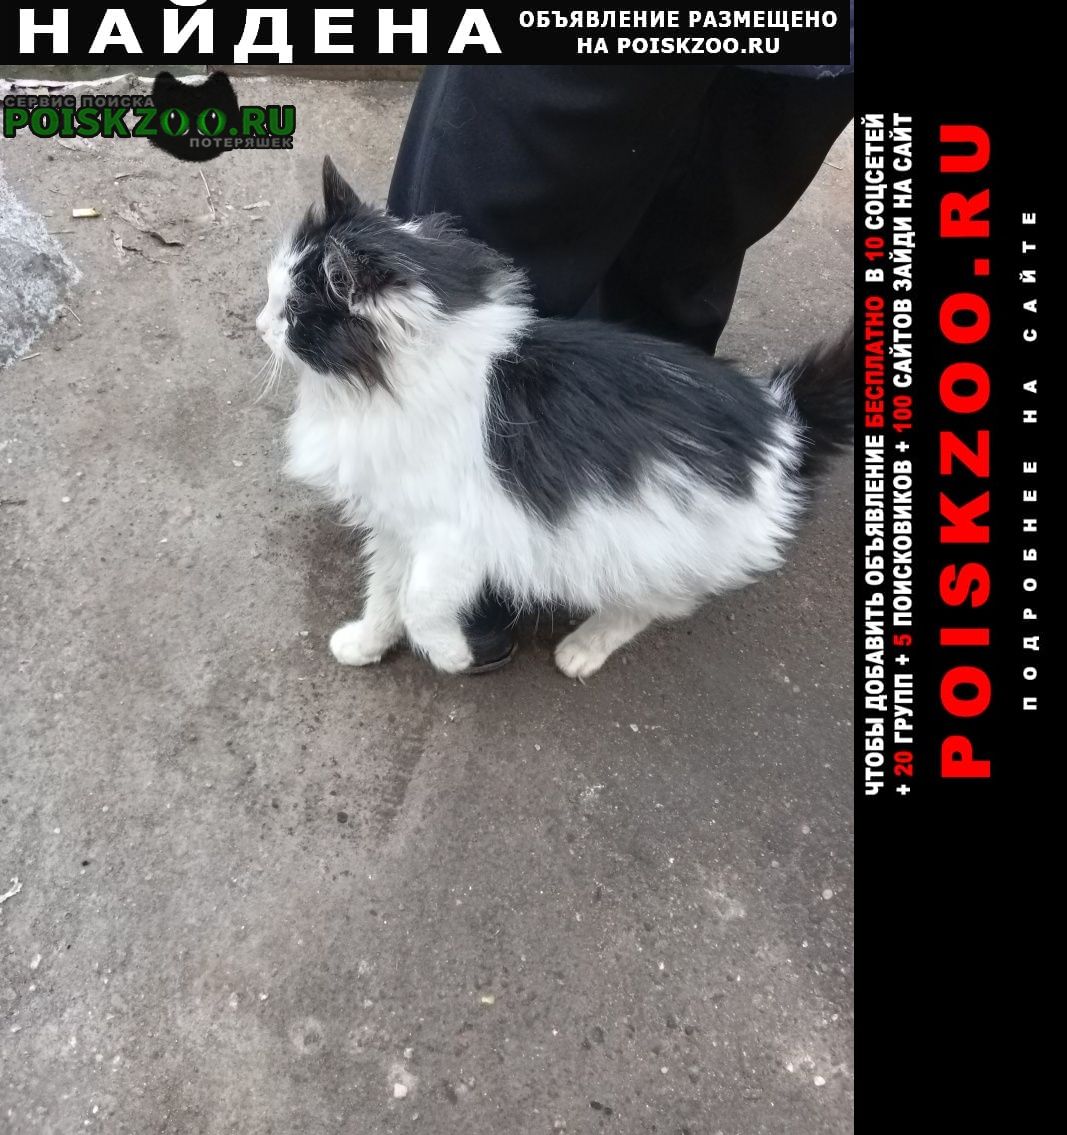 Москва Найдена кошка микрорайон марьино